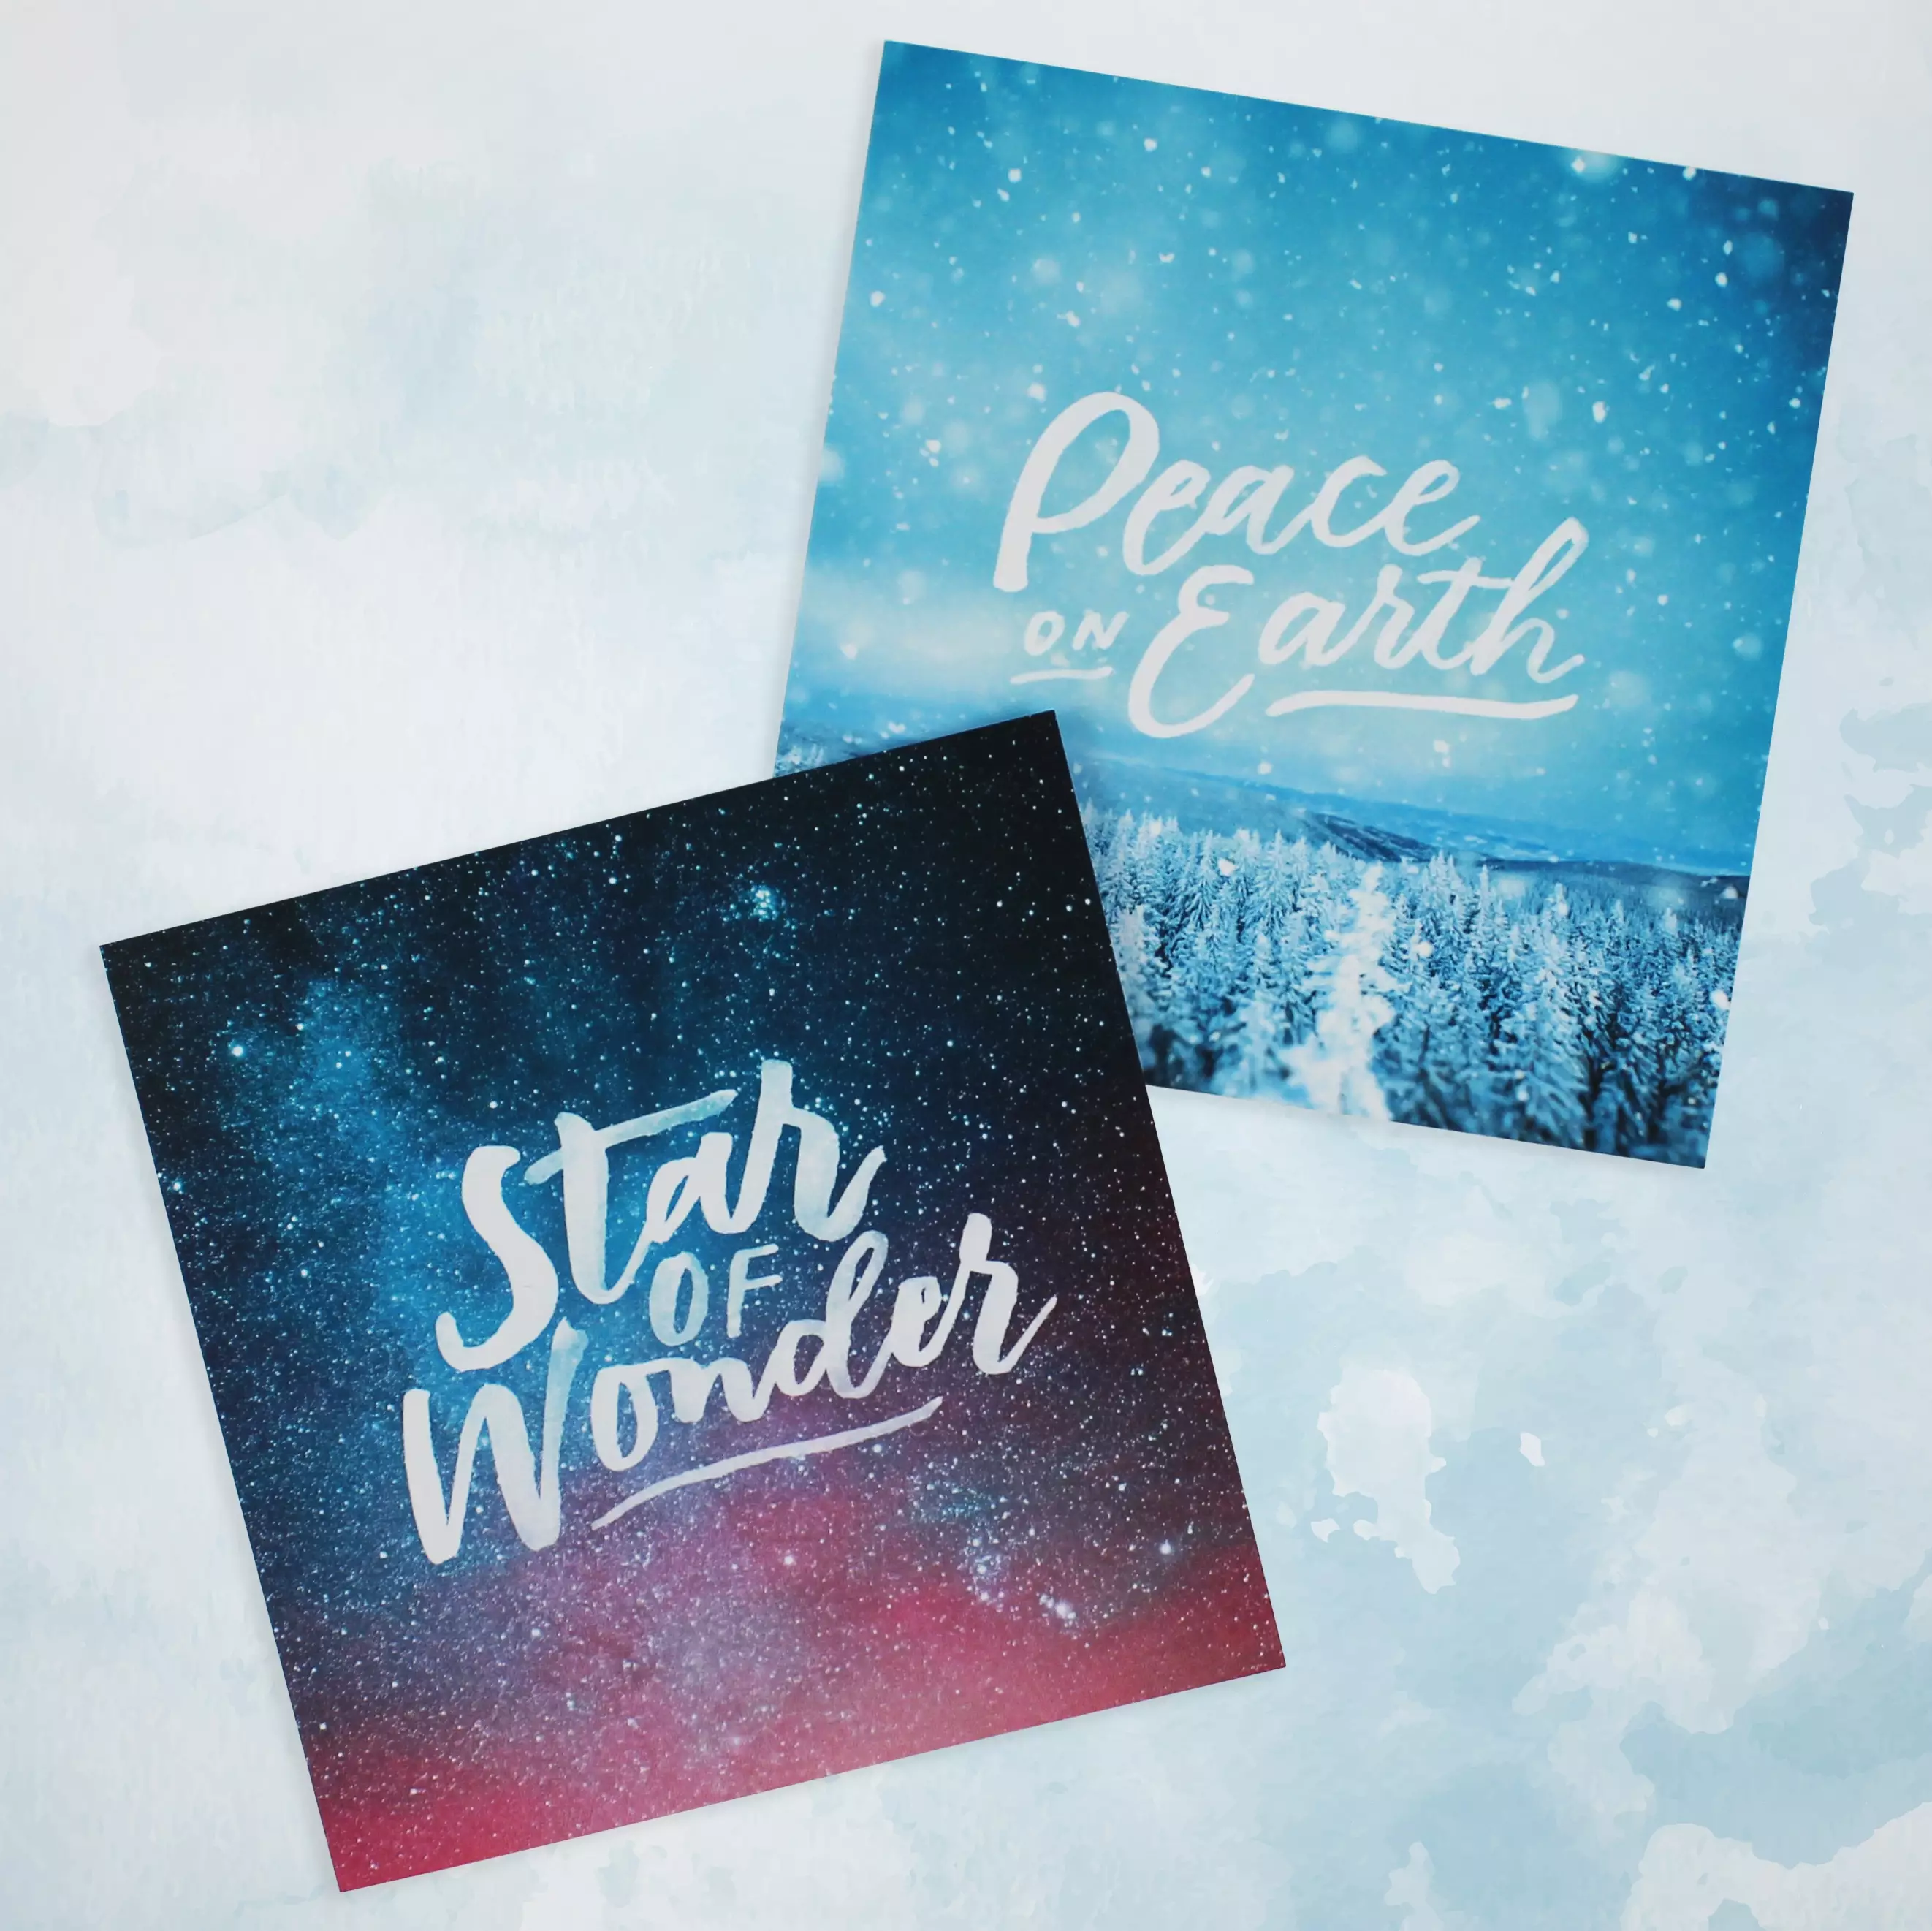 SPCK Celestial Charity Christian Christmas Cards Pack of 10